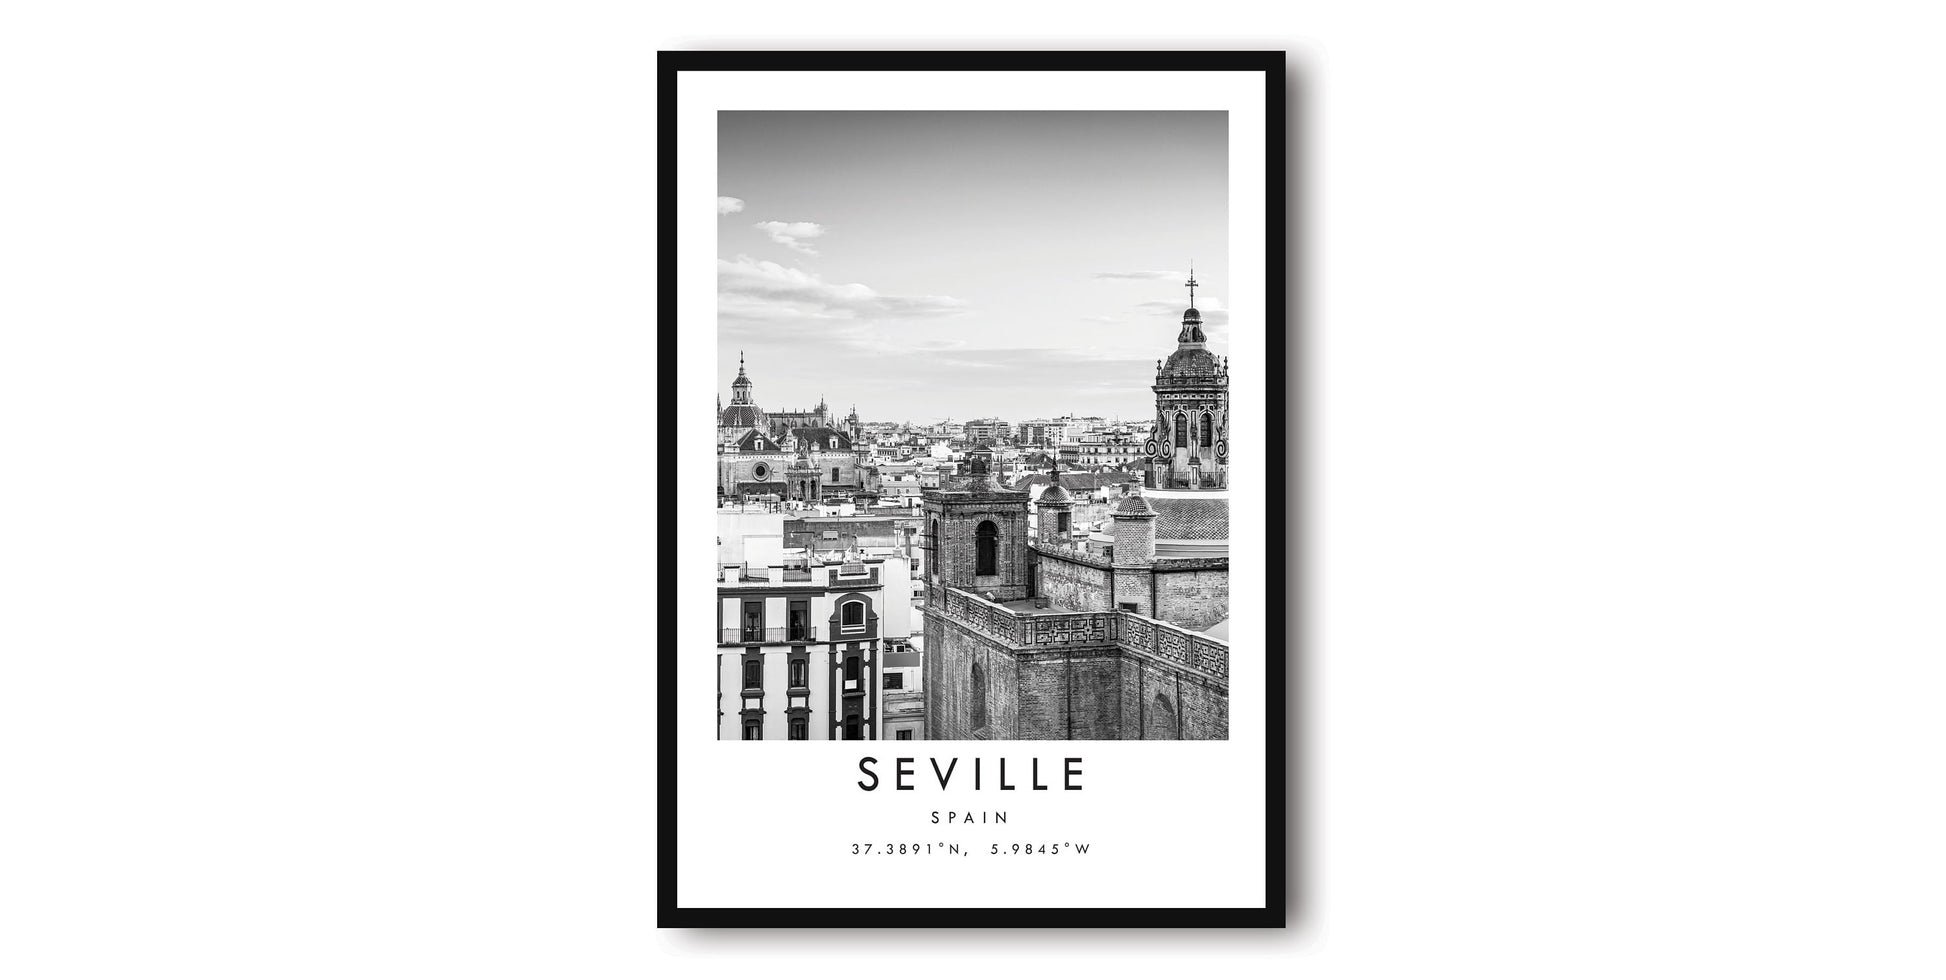 Seville Travel Print